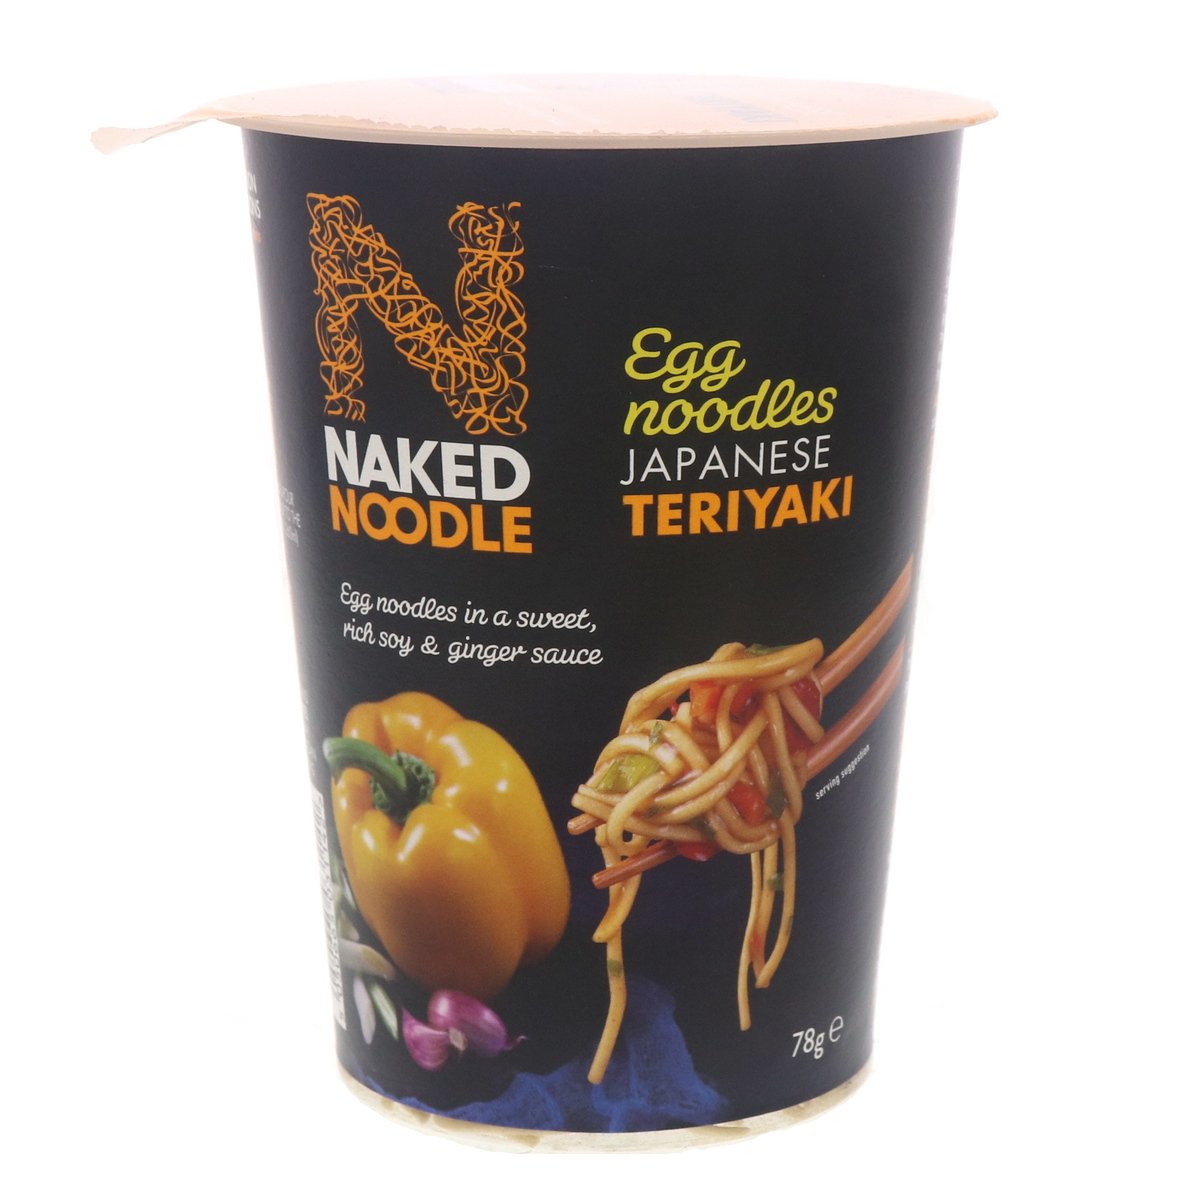 Naked Noodle Japanese Teriyaki Egg Noodles 78g Online at Best Price ...